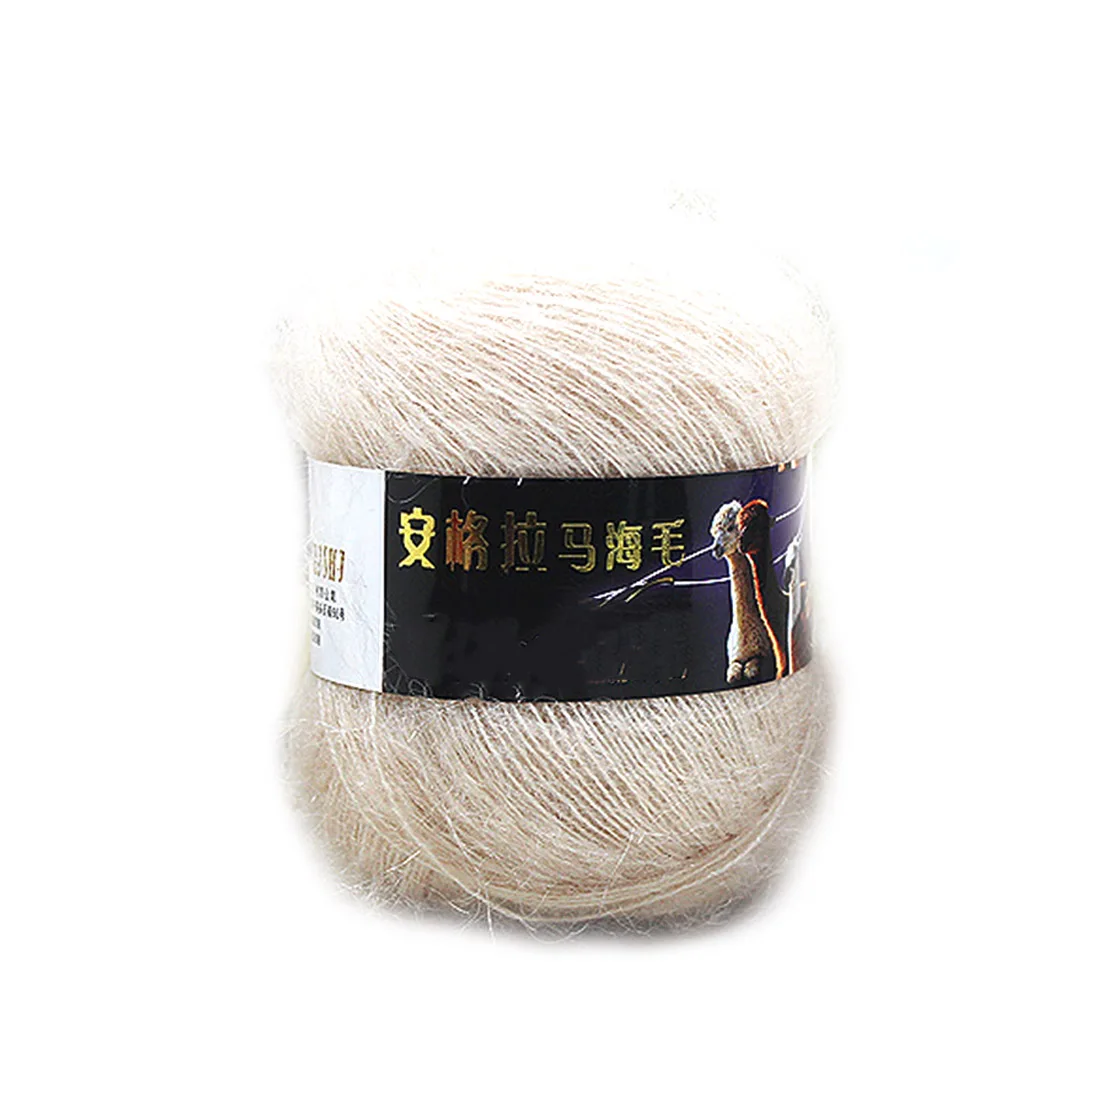 Мягкая мохеровая пряжа для ручного вязание крючком из шерсти пряжа для вязания норковой шерсти пряжа мохеровая шерсть для вязания